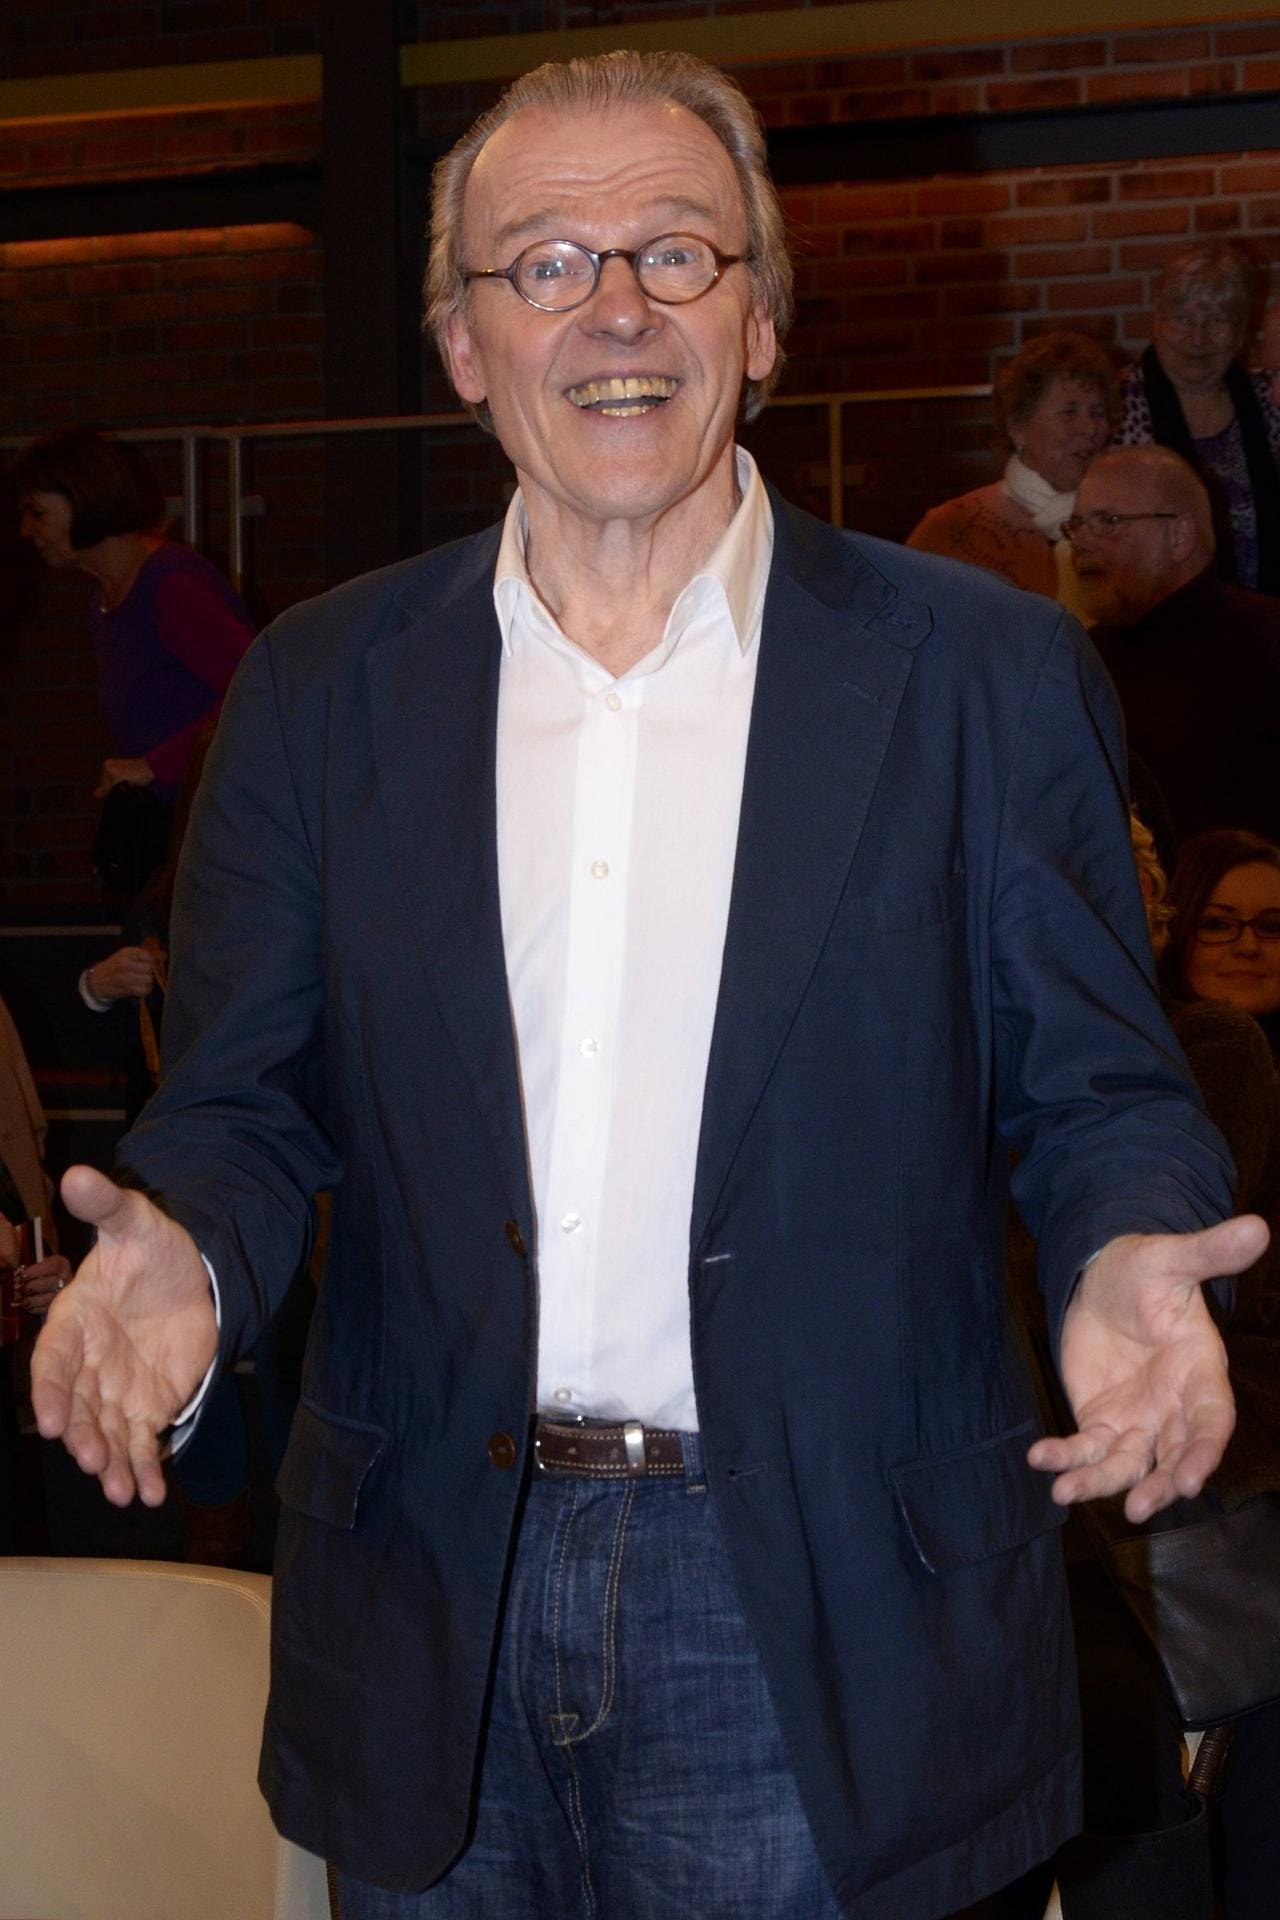 Wichart von Roëll: Der Schauspieler feiert am 20. April 2022 seinen 85. Geburtstag. Zuletzt stand der Schauspieler 2019 für die RTL-Serie "Nachtschwestern" vor der Kamera.